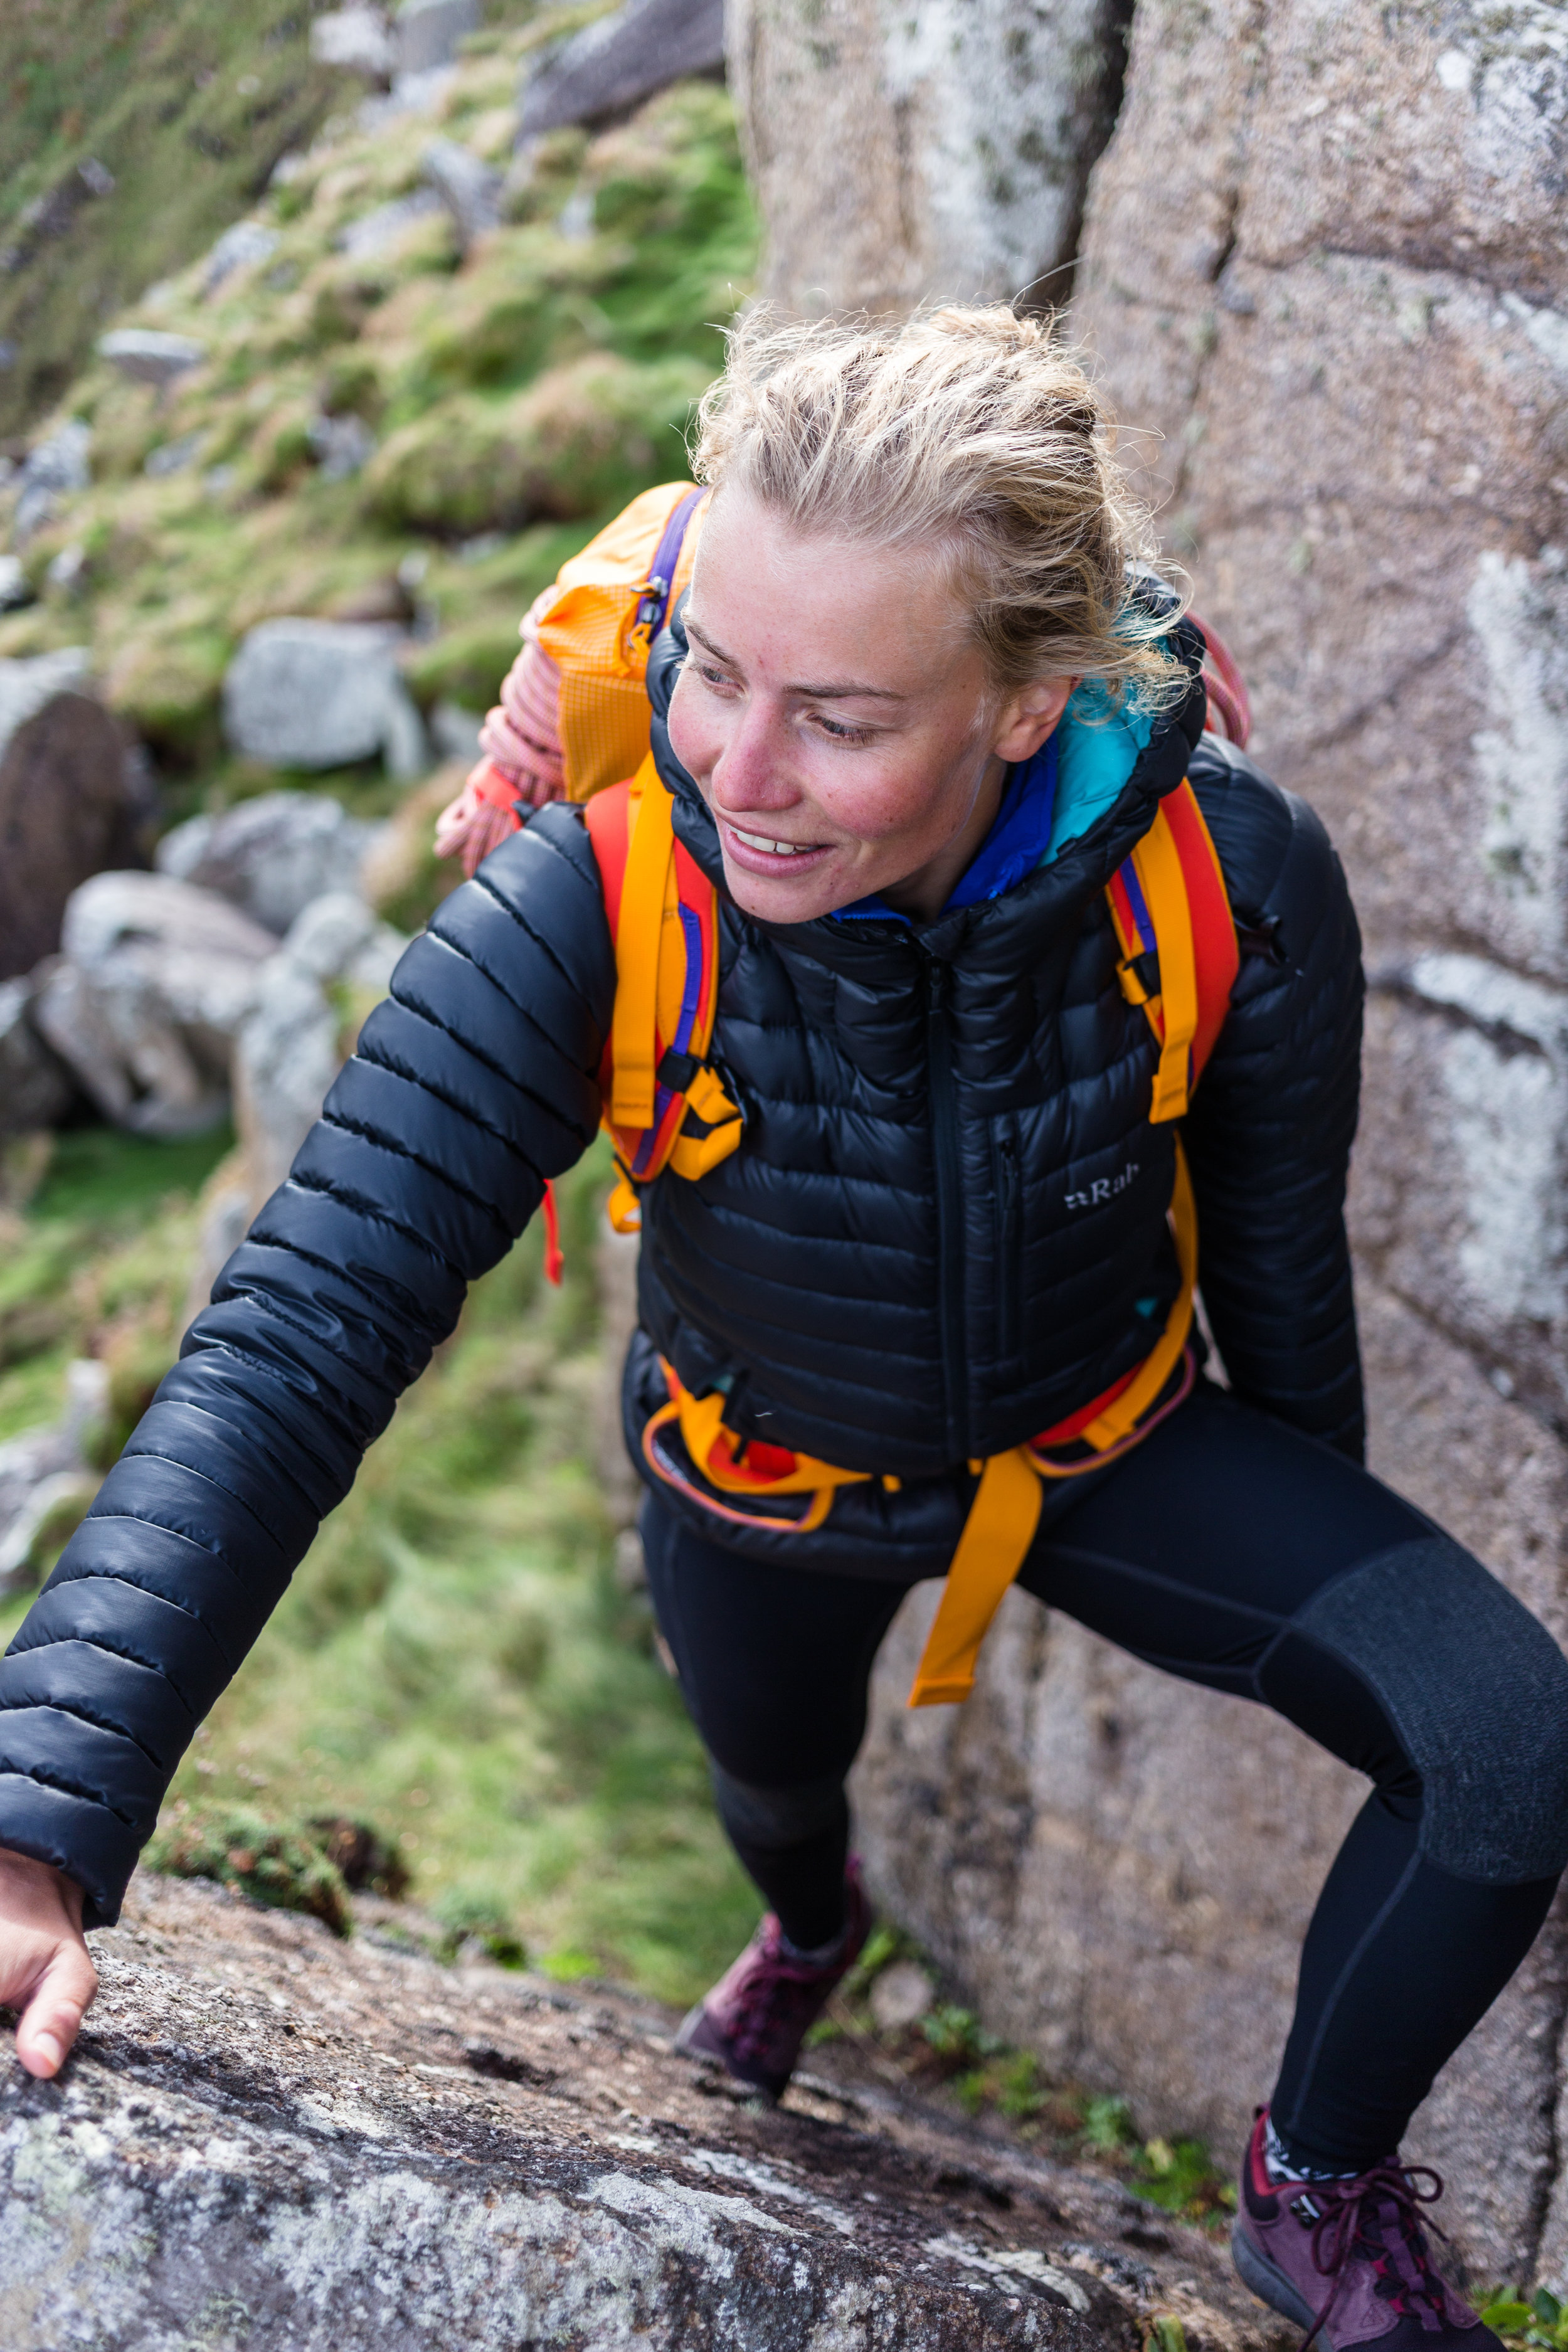 Review: Fjallraven Abisko Trekking Tights — Athena Mellor